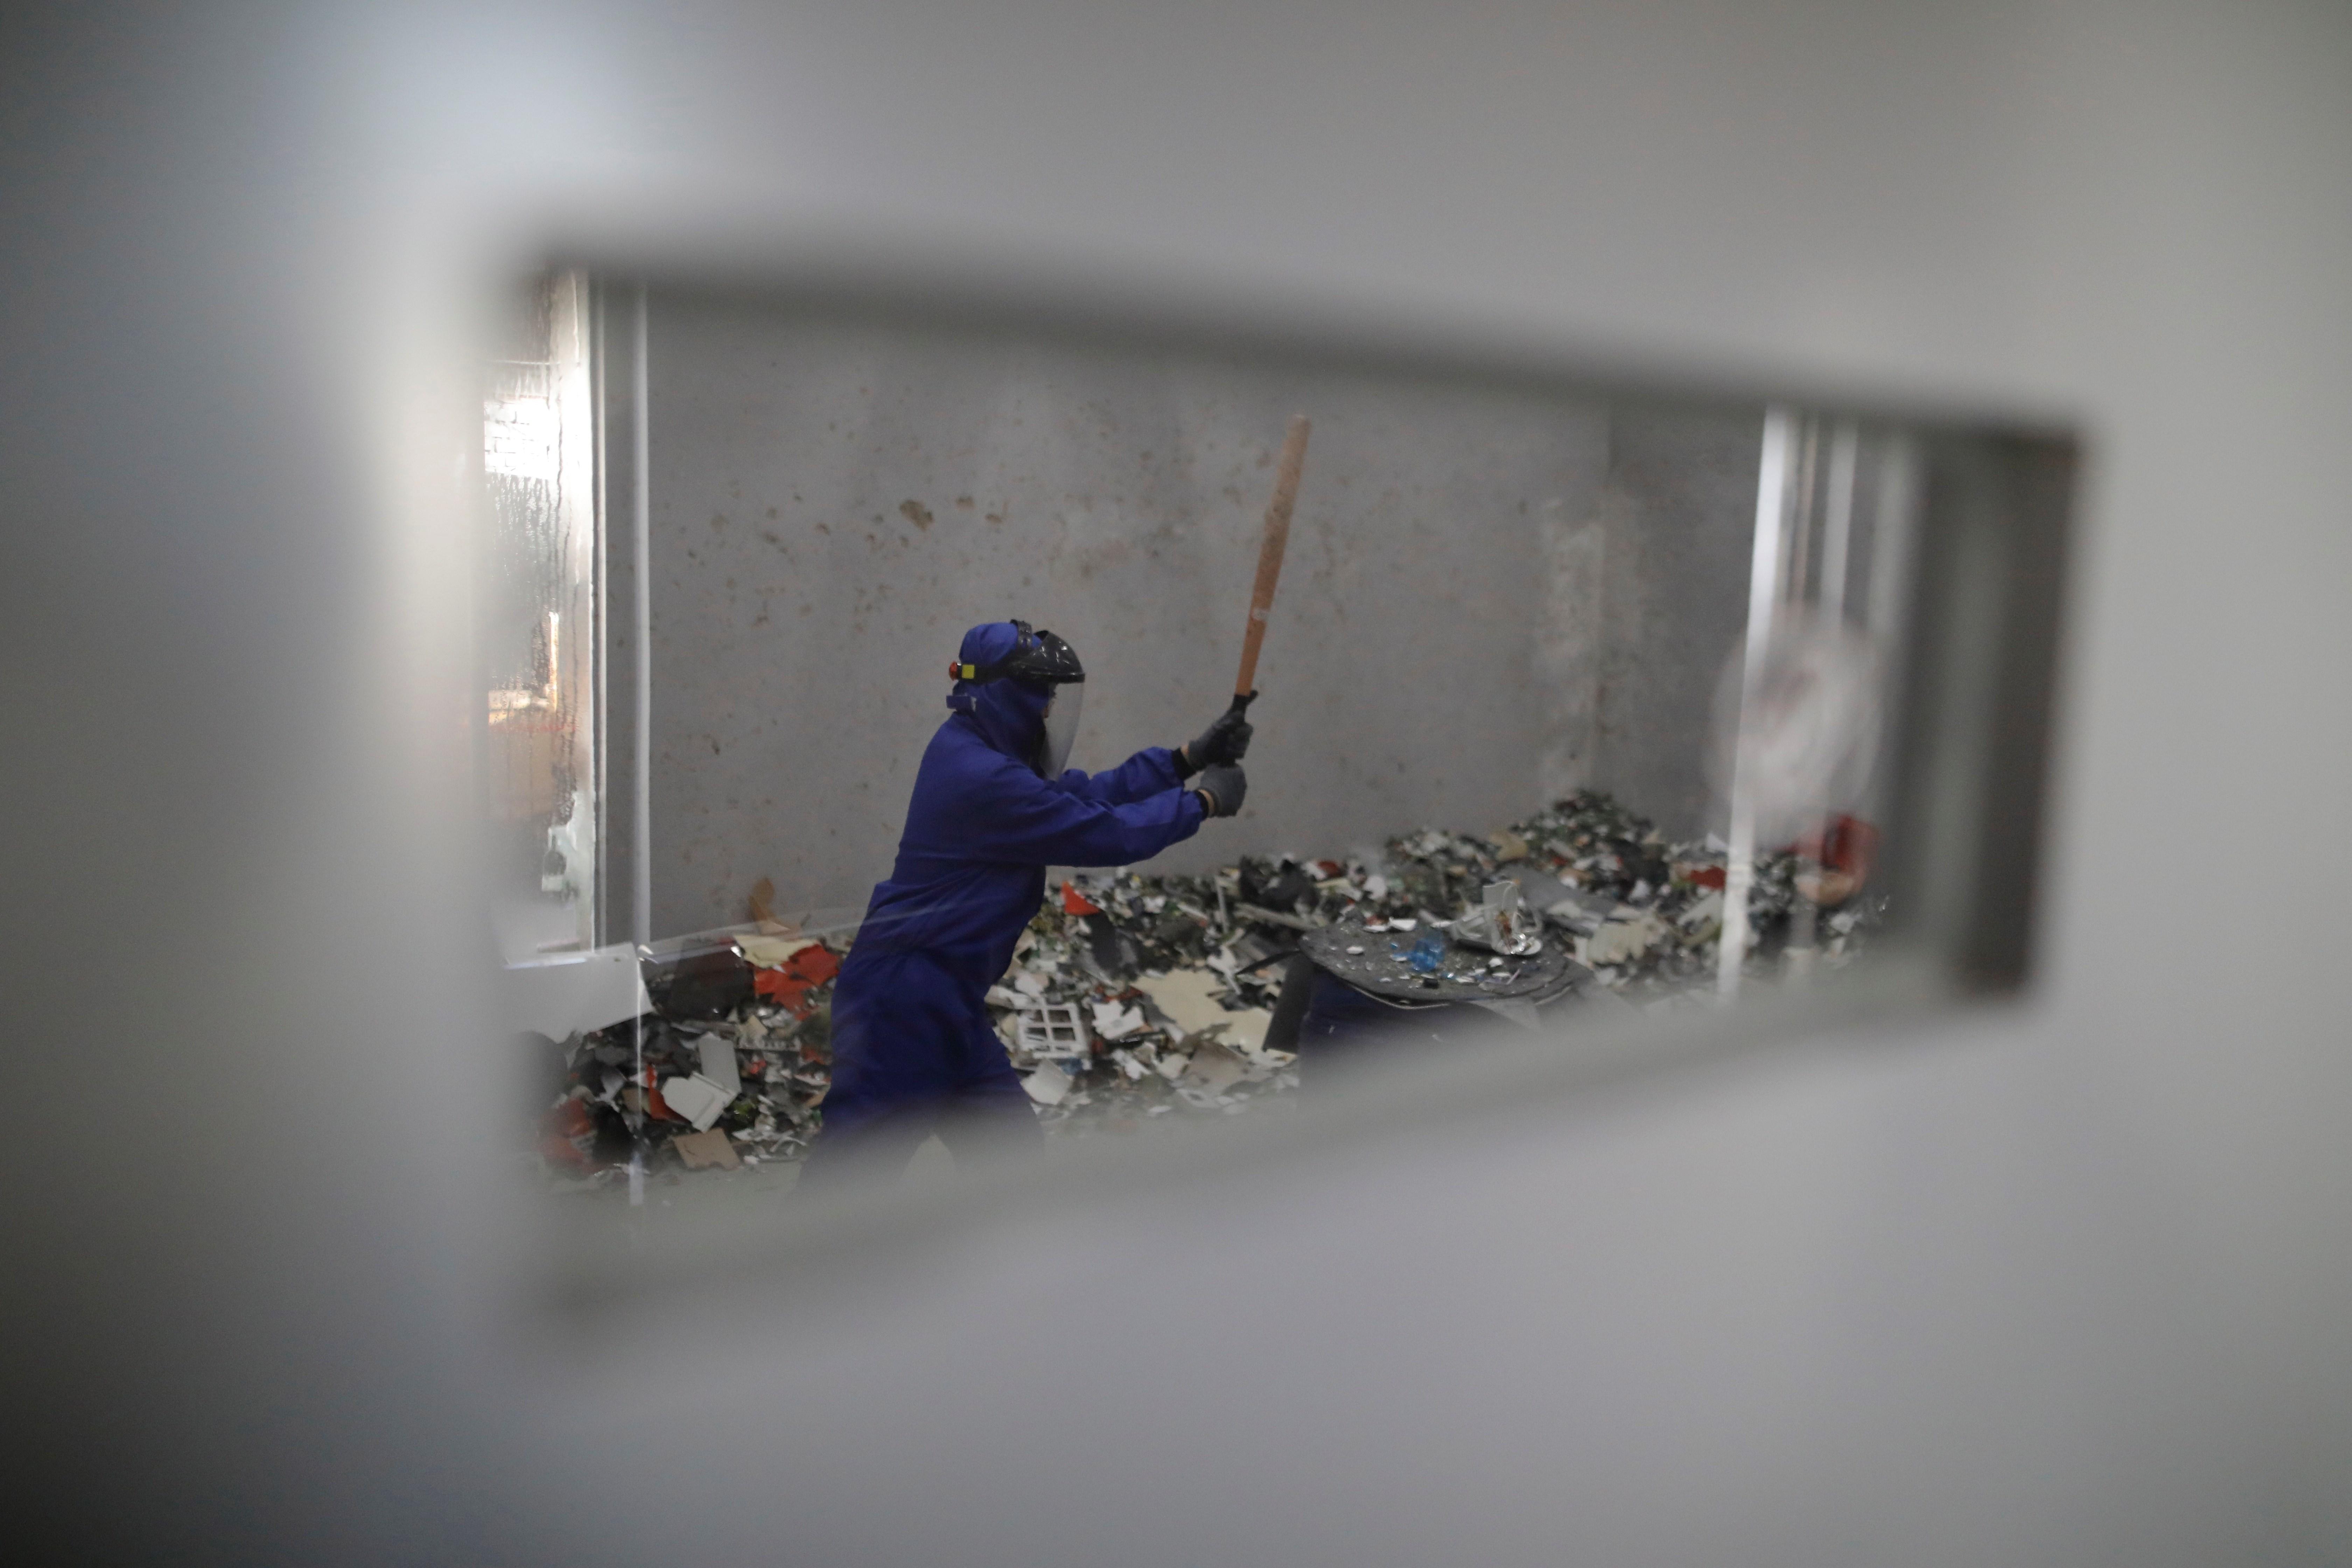 La sala, que abrió en la capital china en septiembre de 2018, ayuda a sus clientes a liberar estrés rompiendo botellas, muebles viejos, maniquíes y otros objetos por unos 26 euros media hora. (Foto Prensa Libre: EFE)